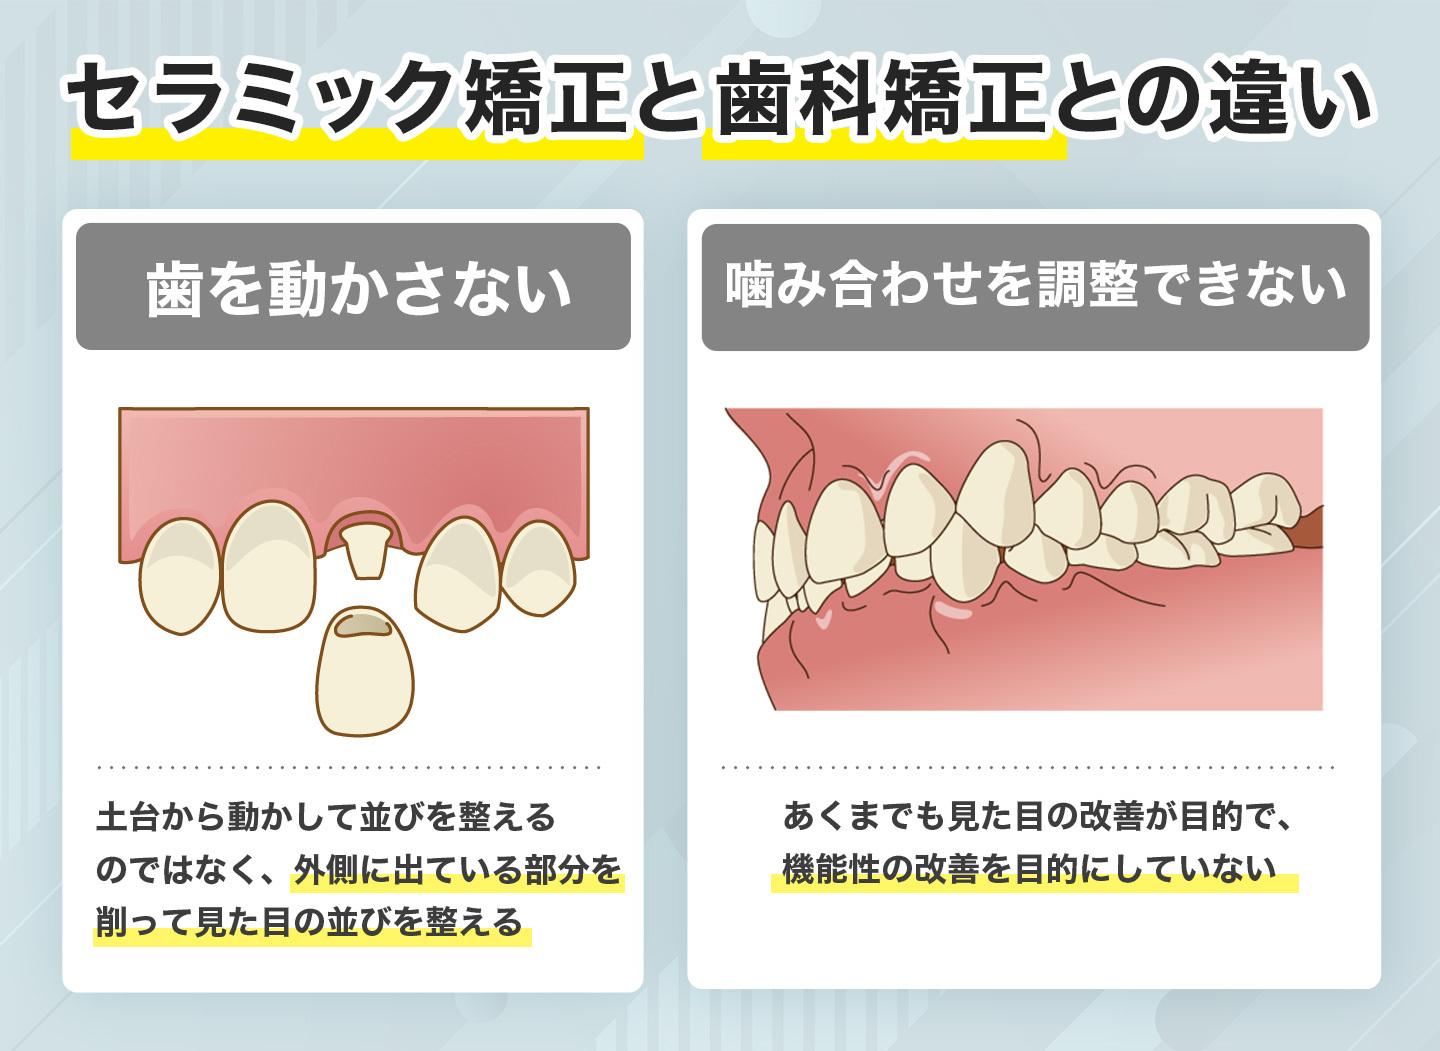 セラミック矯正と歯科矯正との違い